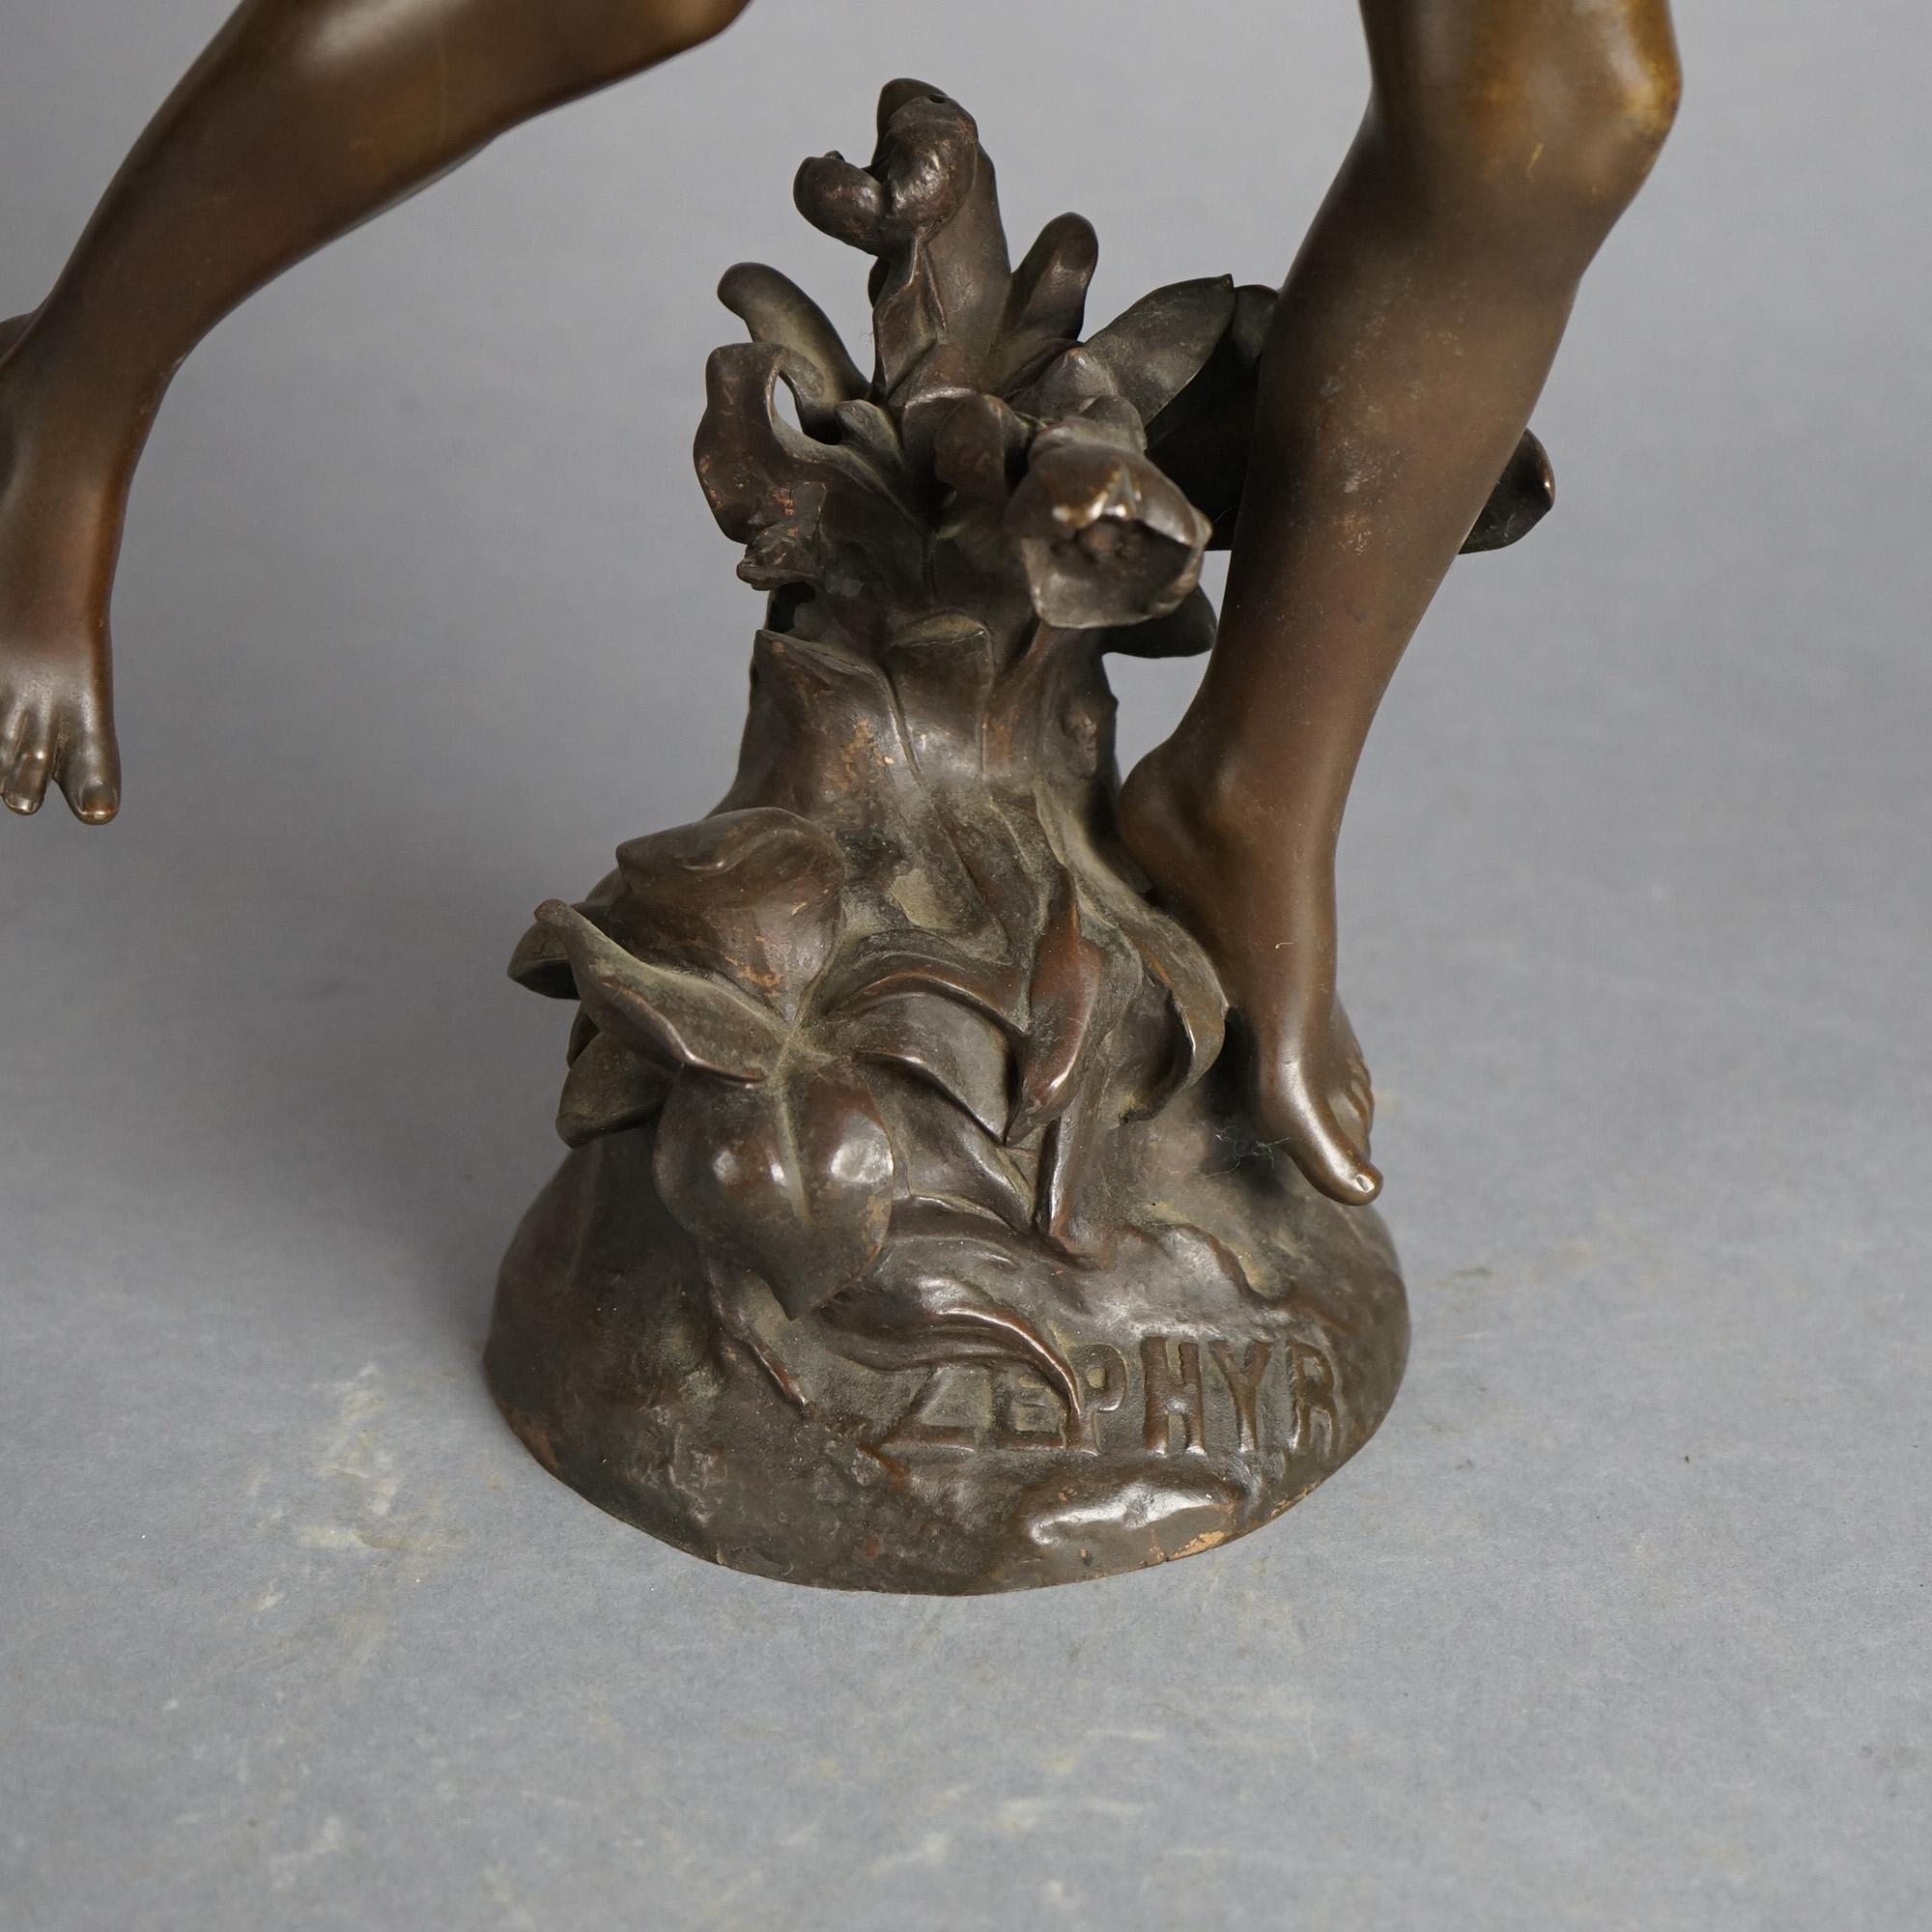 Antique Zephyr Cast Bronze Sculpture Signed By F. Charpentier C1890 For Sale 3